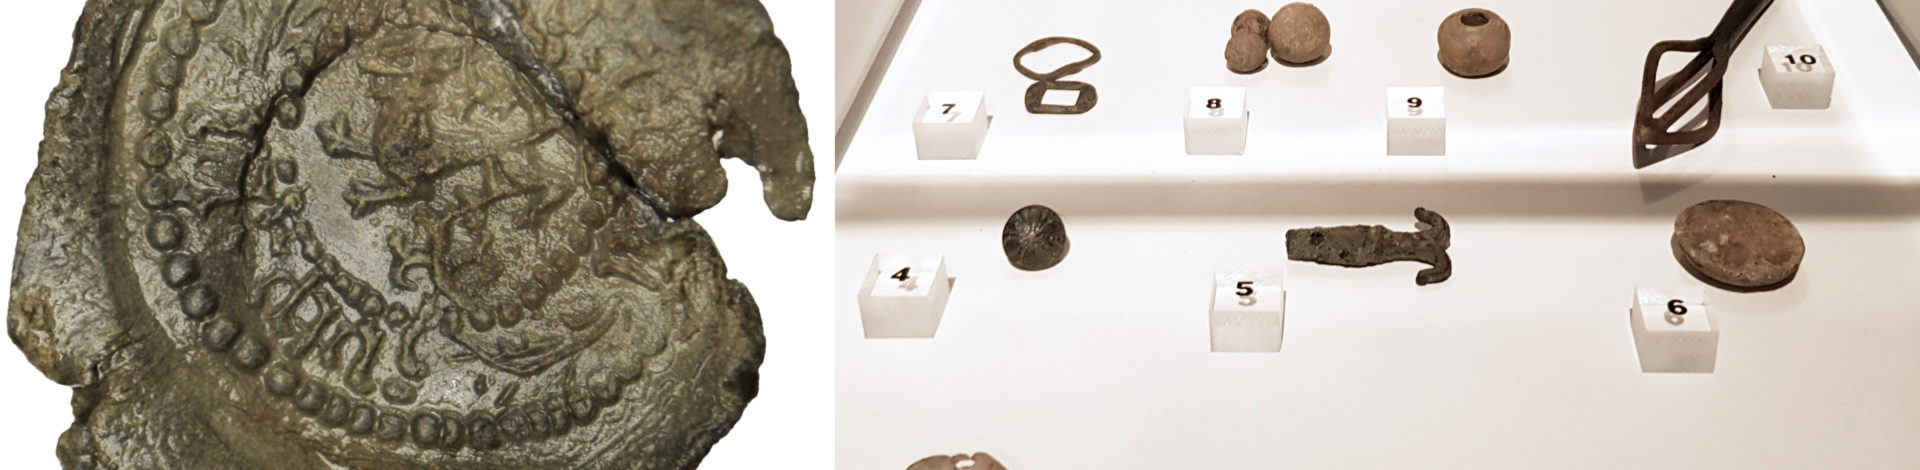 Vitrine met archeologische vondsten in het Stedelijk Museum Zutphen